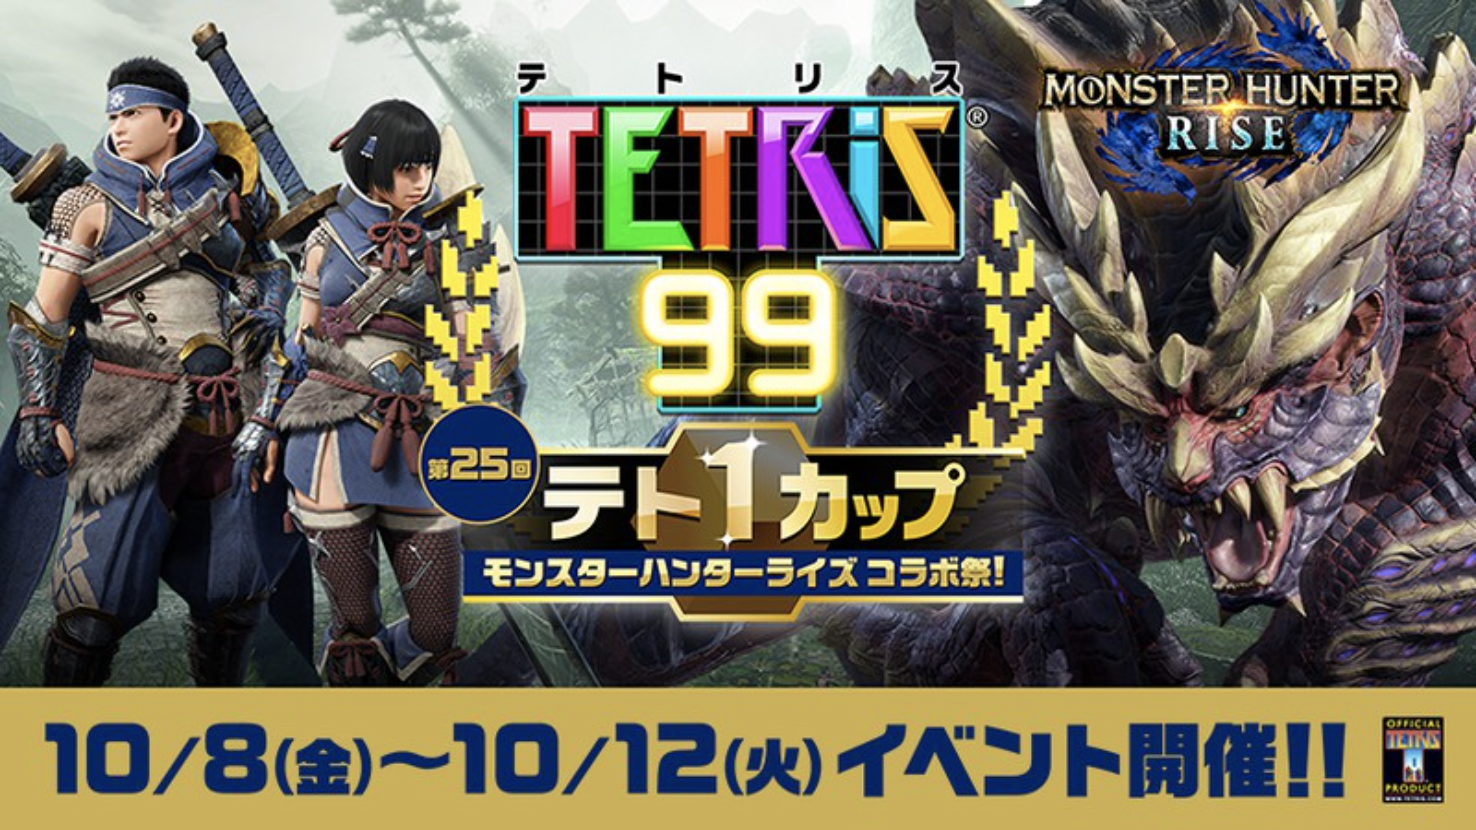 Monster Hunter Rise Tetris 99 Event Starting Friday